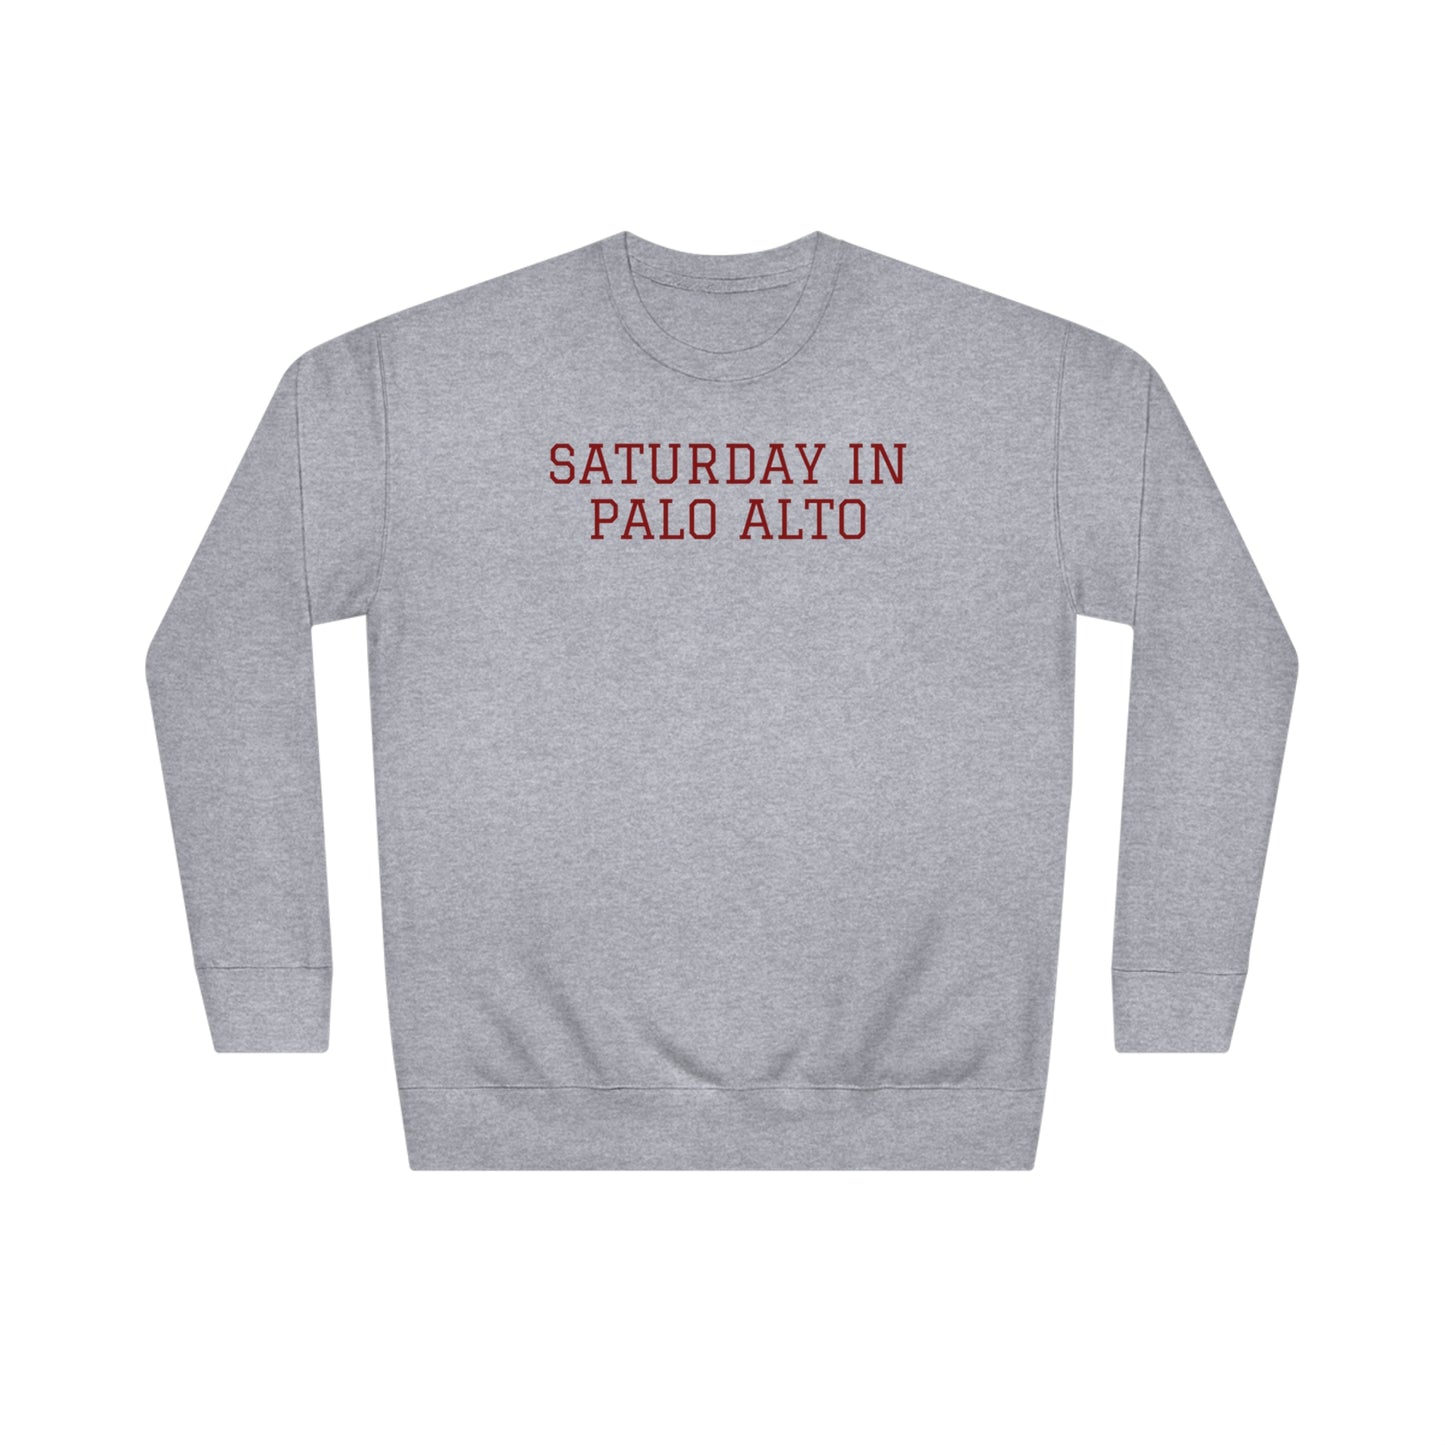 Stanford Crew Sweatshirt